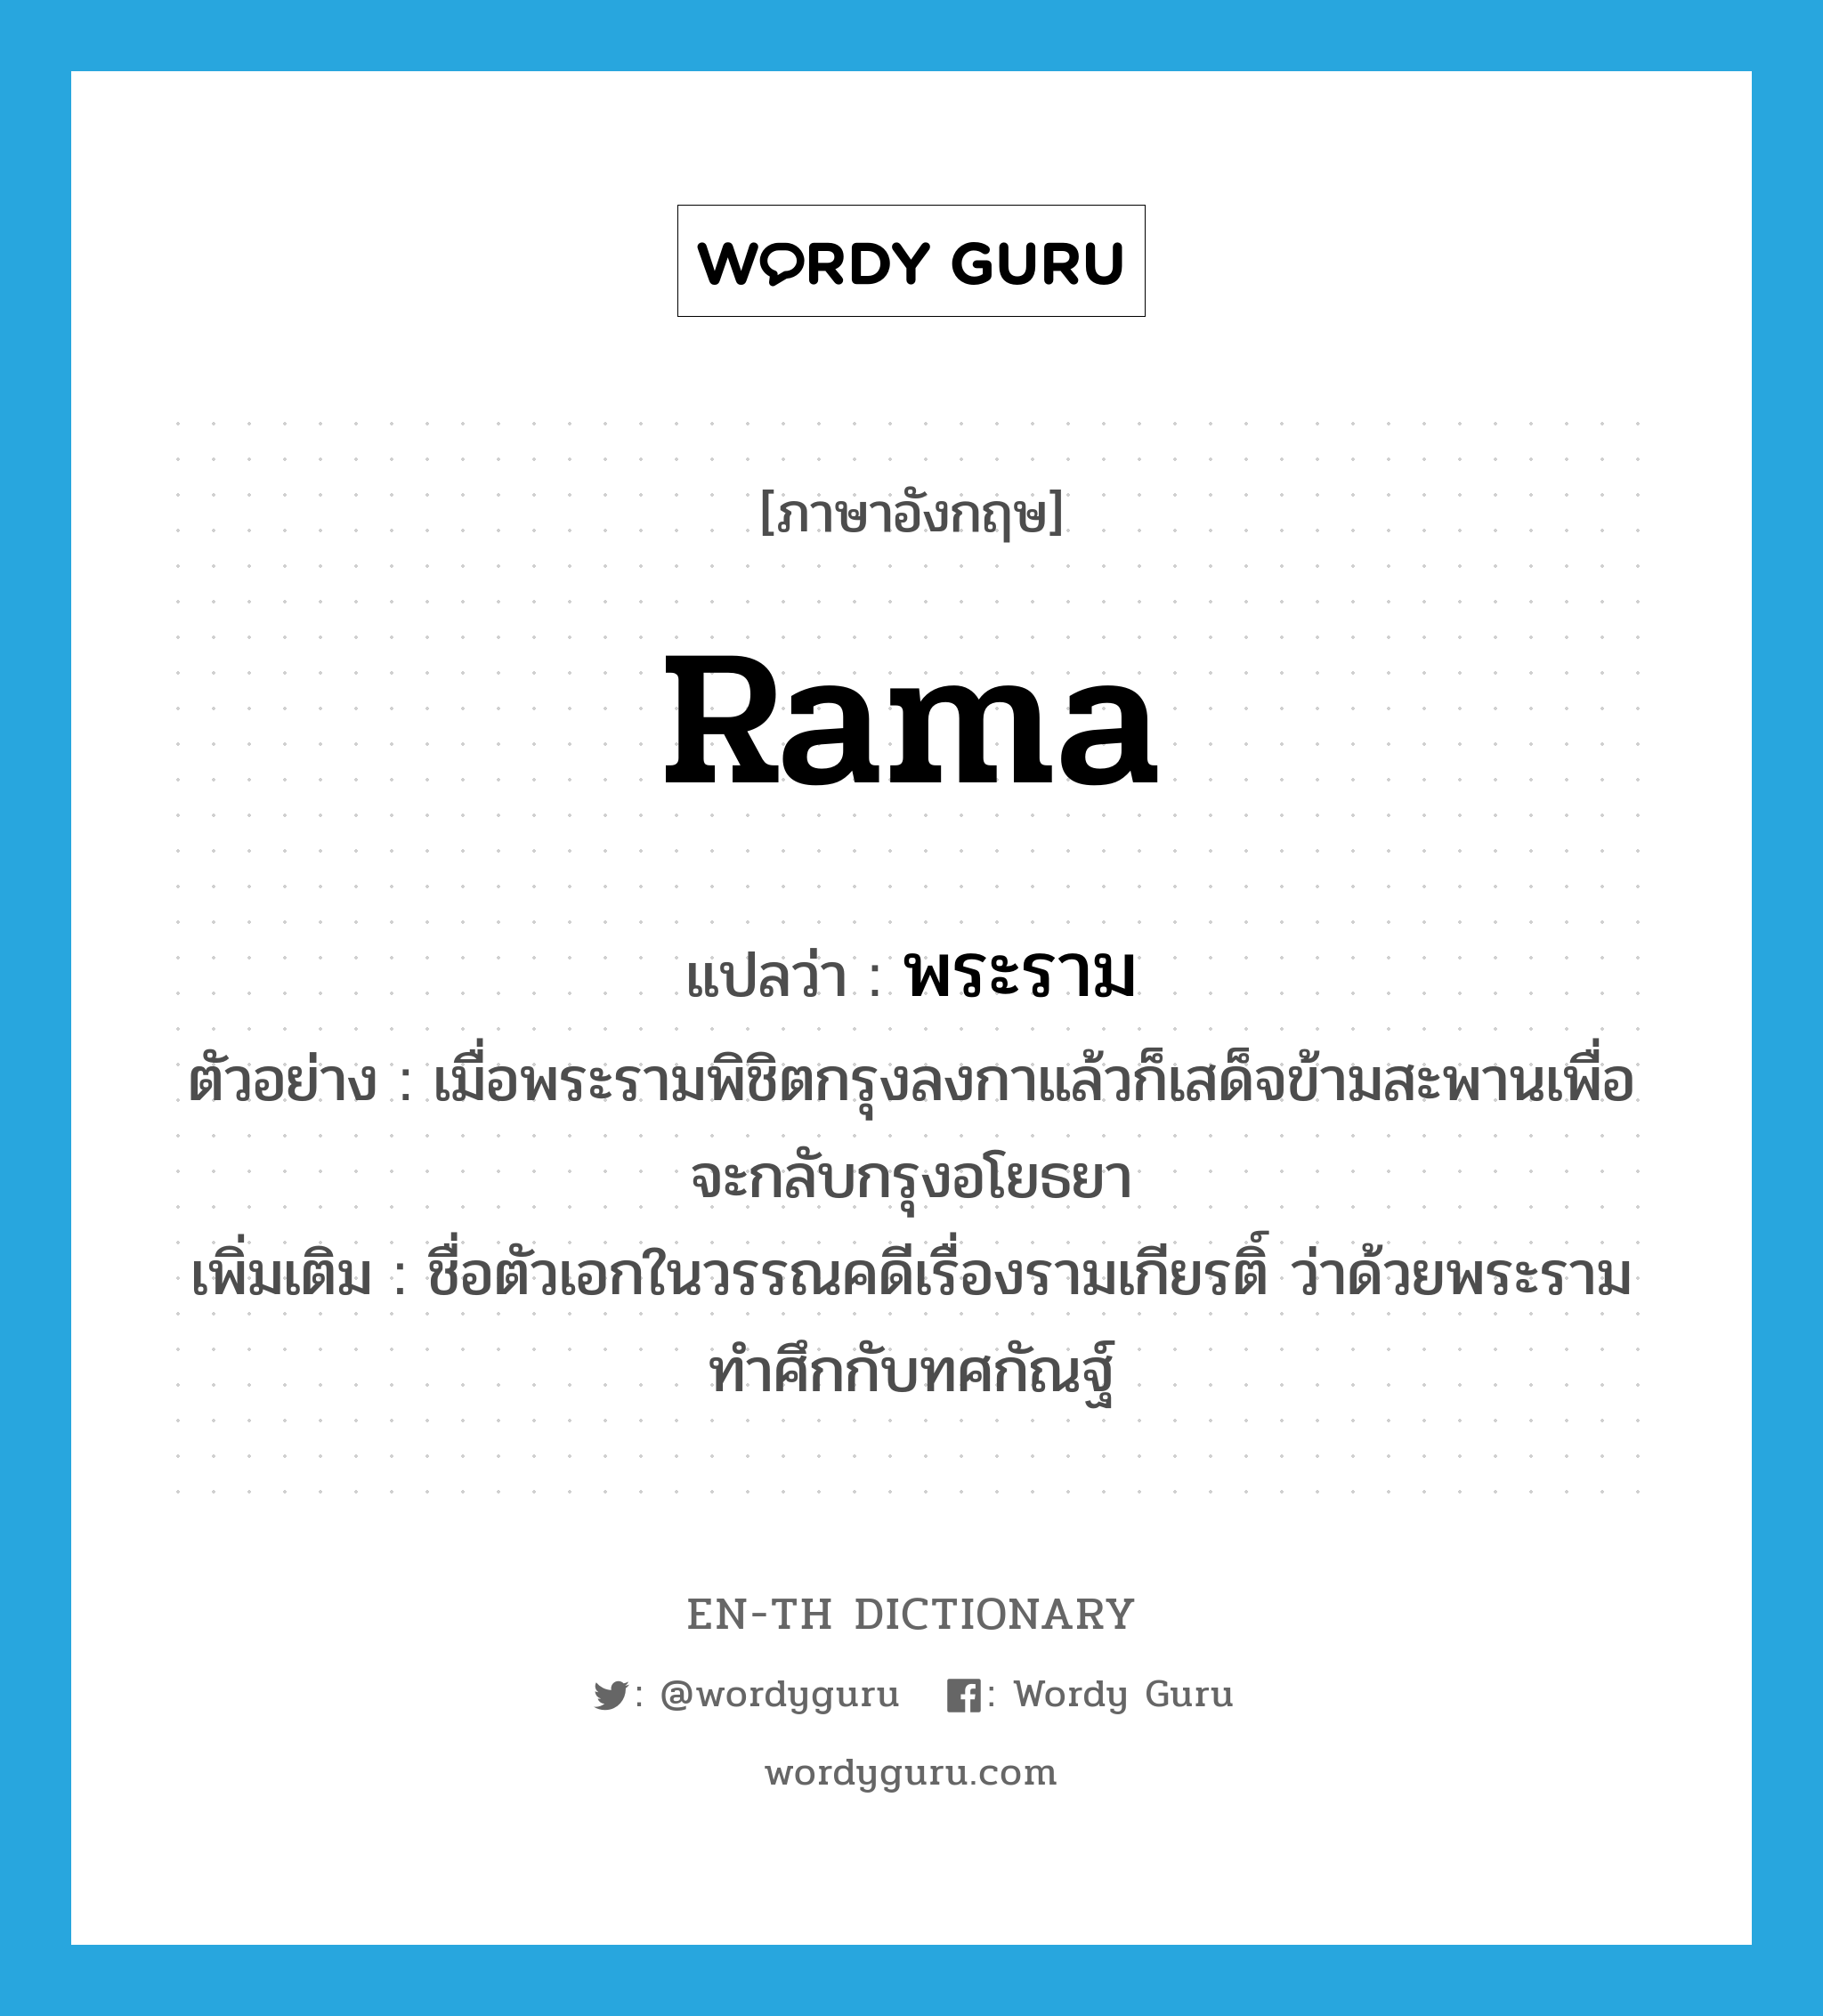 Rama แปลว่า?, คำศัพท์ภาษาอังกฤษ Rama แปลว่า พระราม ประเภท N ตัวอย่าง เมื่อพระรามพิชิตกรุงลงกาแล้วก็เสด็จข้ามสะพานเพื่อจะกลับกรุงอโยธยา เพิ่มเติม ชื่อตัวเอกในวรรณคดีเรื่องรามเกียรติ์ ว่าด้วยพระรามทำศึกกับทศกัณฐ์ หมวด N